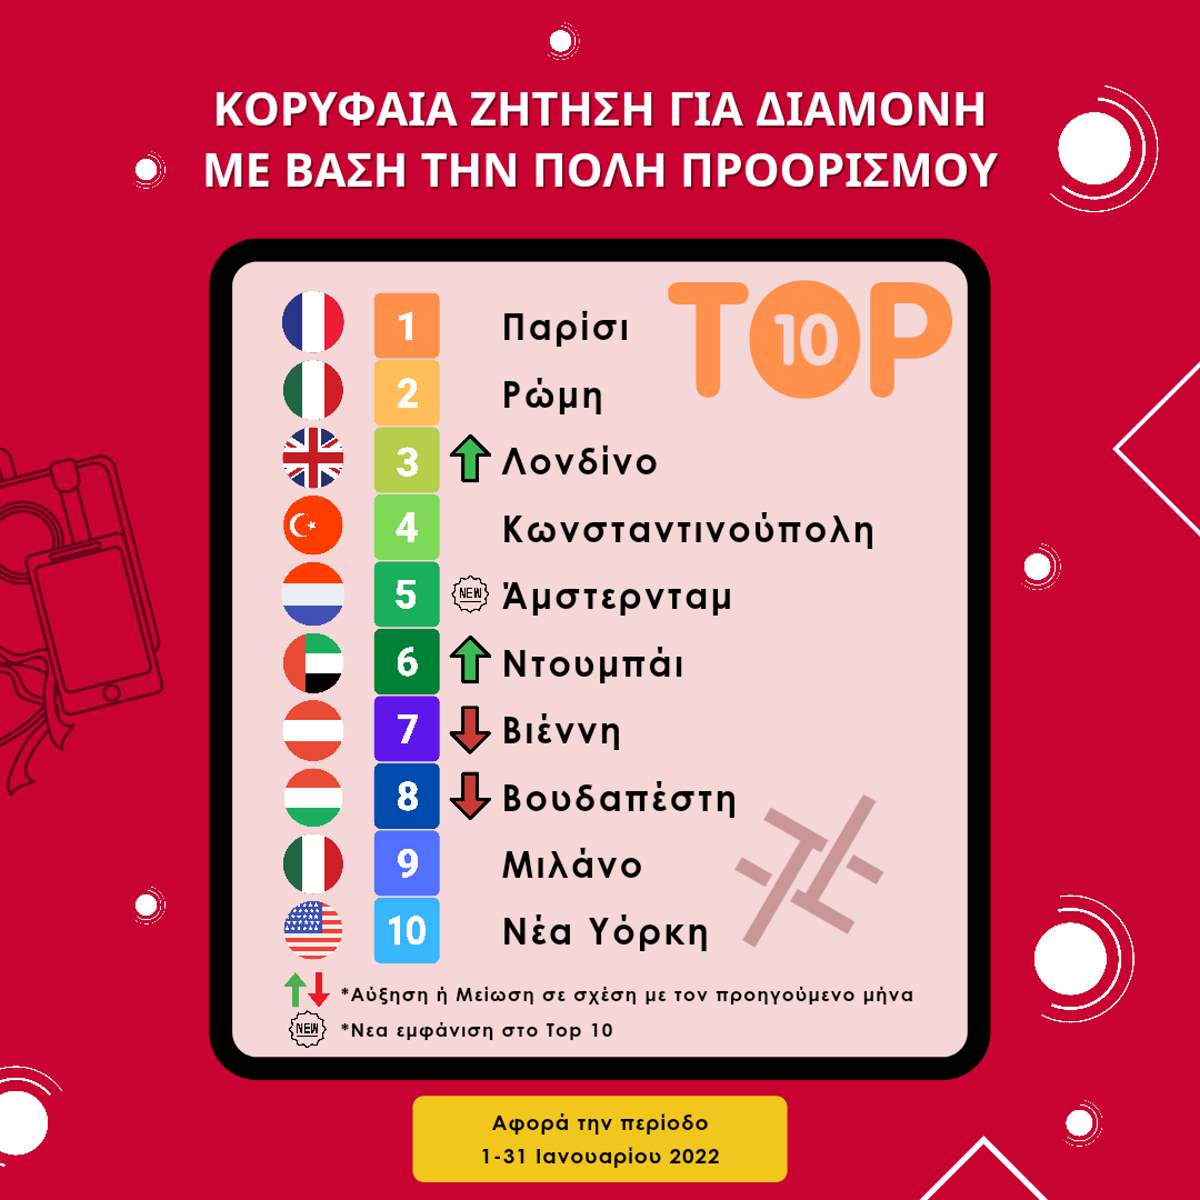 Οι top προορισμοί που αναζήτησαν οι Έλληνες για τον Ιανουάριο 2022